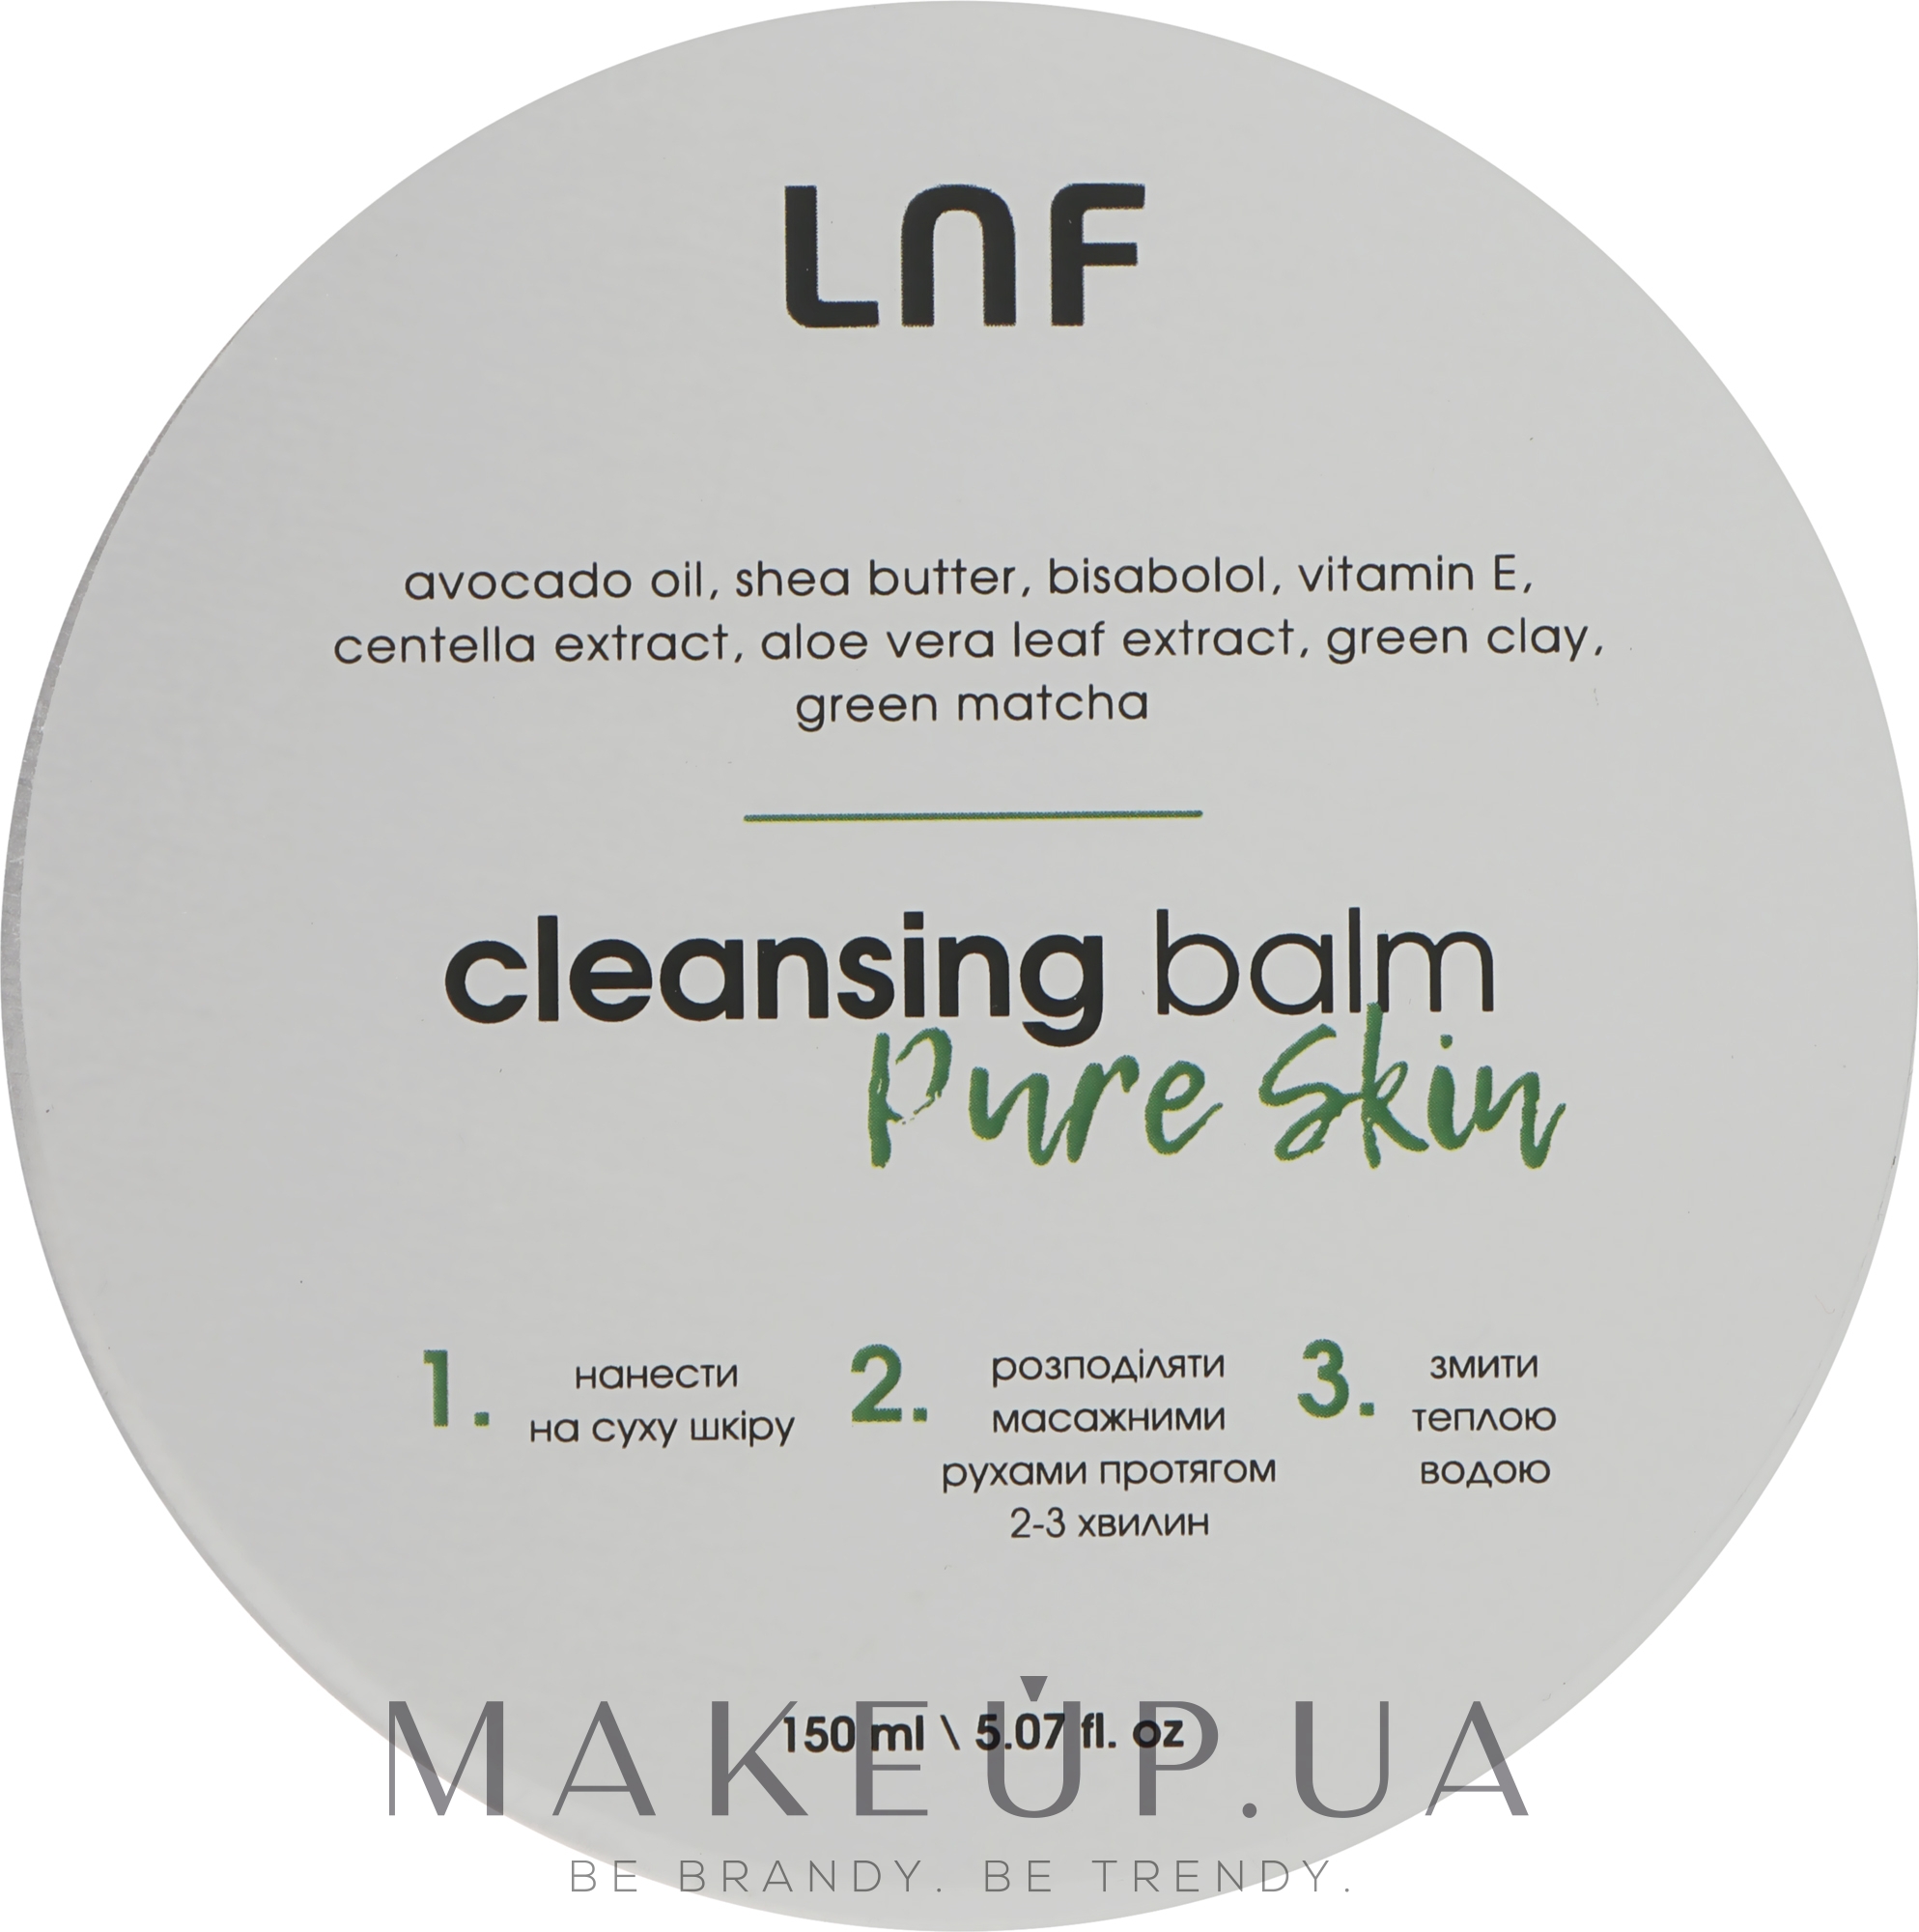 Бальзам для очищения пор с матчей и зеленой глиной - Luff Cleansing Balm Pure Skin  — фото 150ml